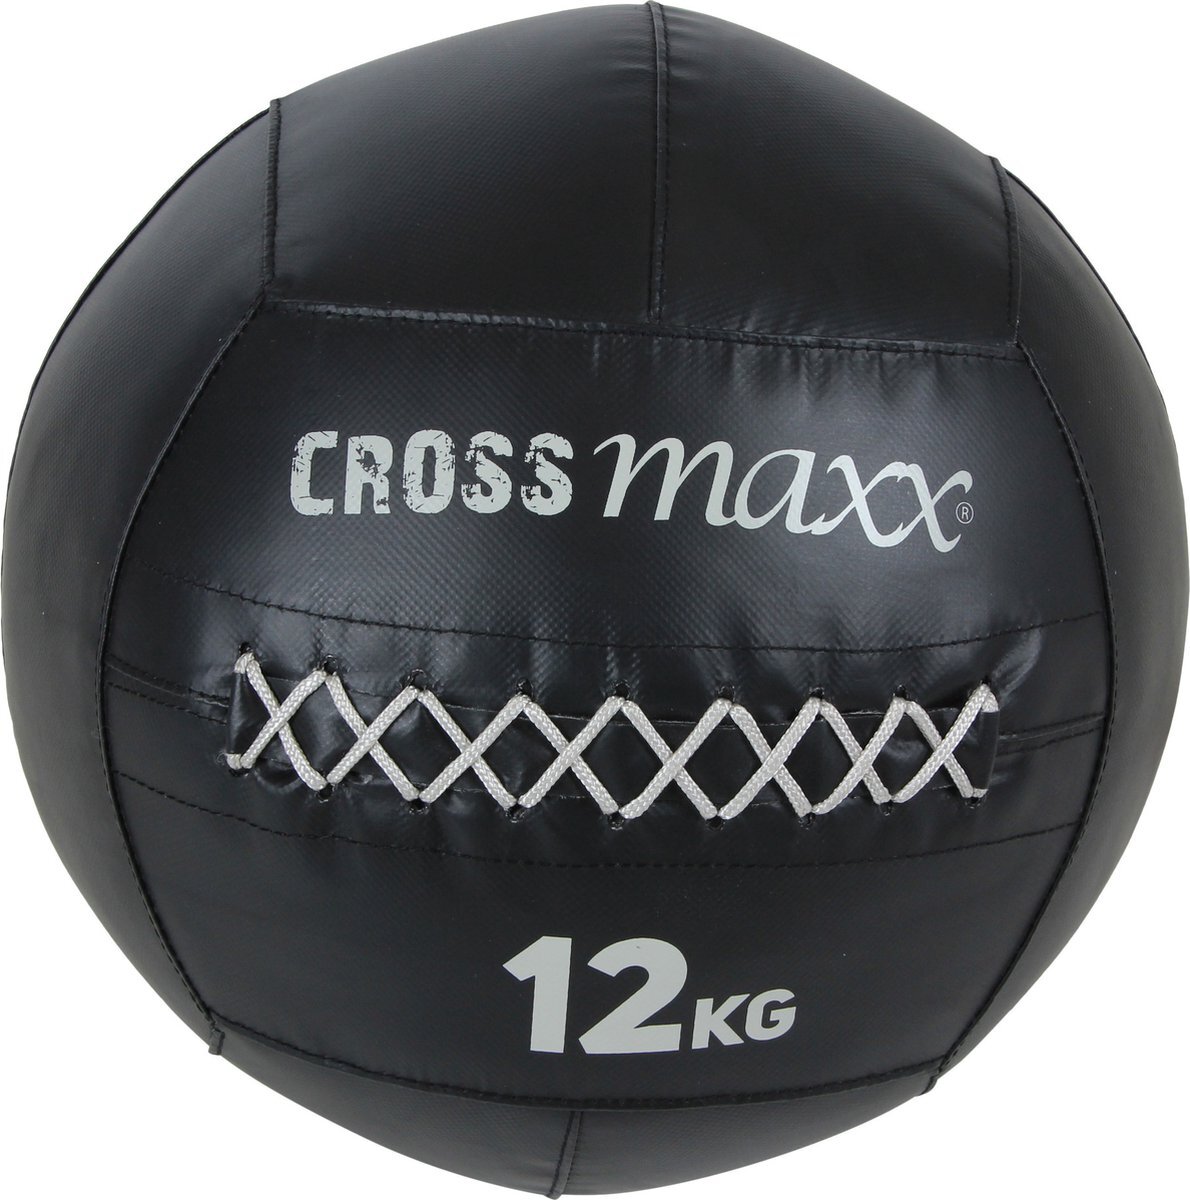 Crossmaxx PRO WALL BALL - 12kg